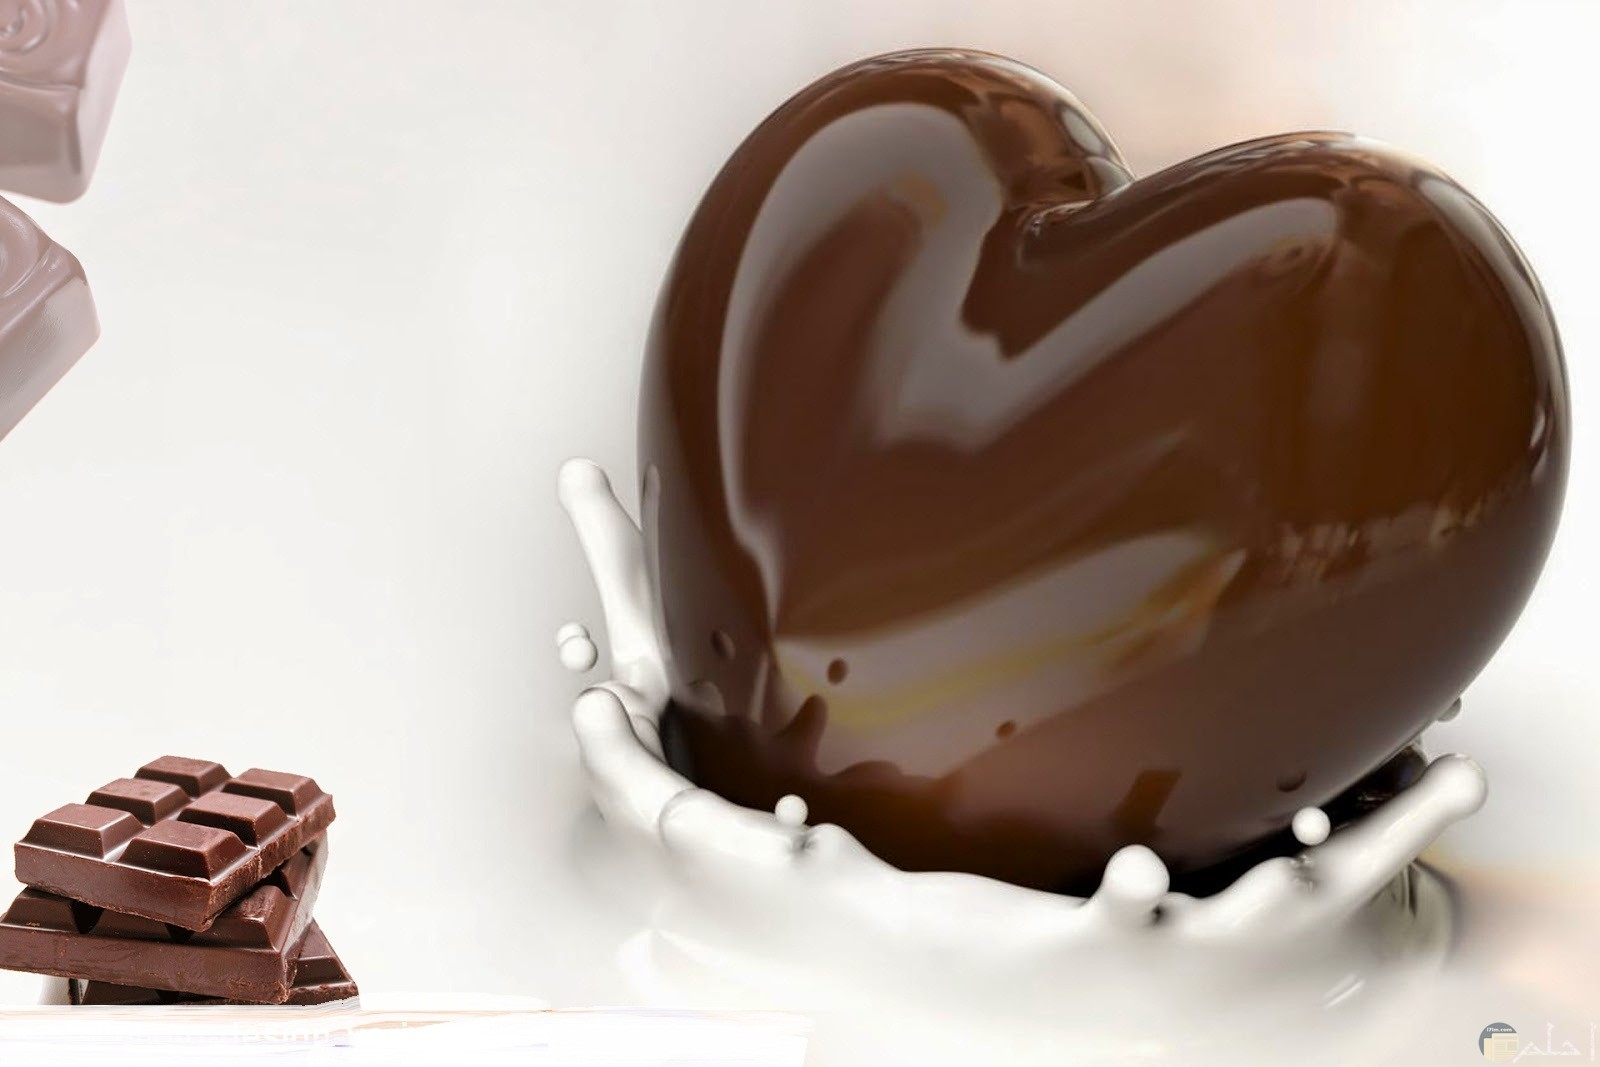 قلب من الشوكولاته للاحباب نهديه.